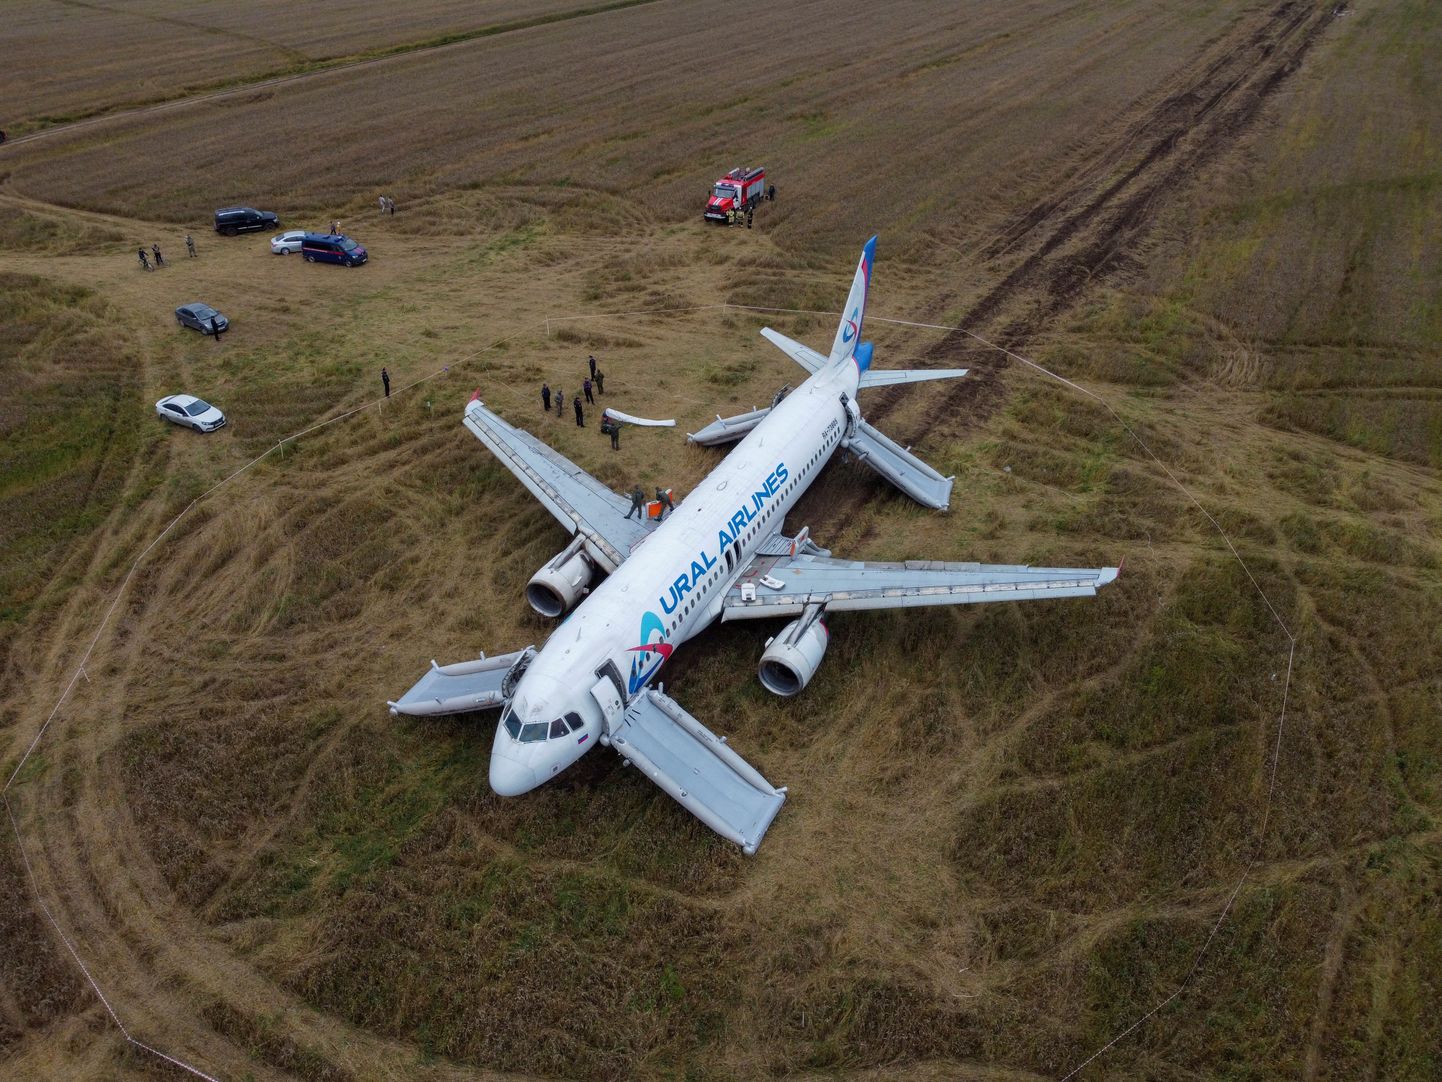 Vene lennufirma Ural Airlines lennuk Airbus A320 kündis telikutega maad ning mootoritesse lendas mulda ja kulu, kuid ettevõte loodab siiski omal jõul asustamata kohast minema saada. Mootorid ja muud süsteemid paistavad ekspertide hinnangul olevat töökorras pärast kohapealset remonti.